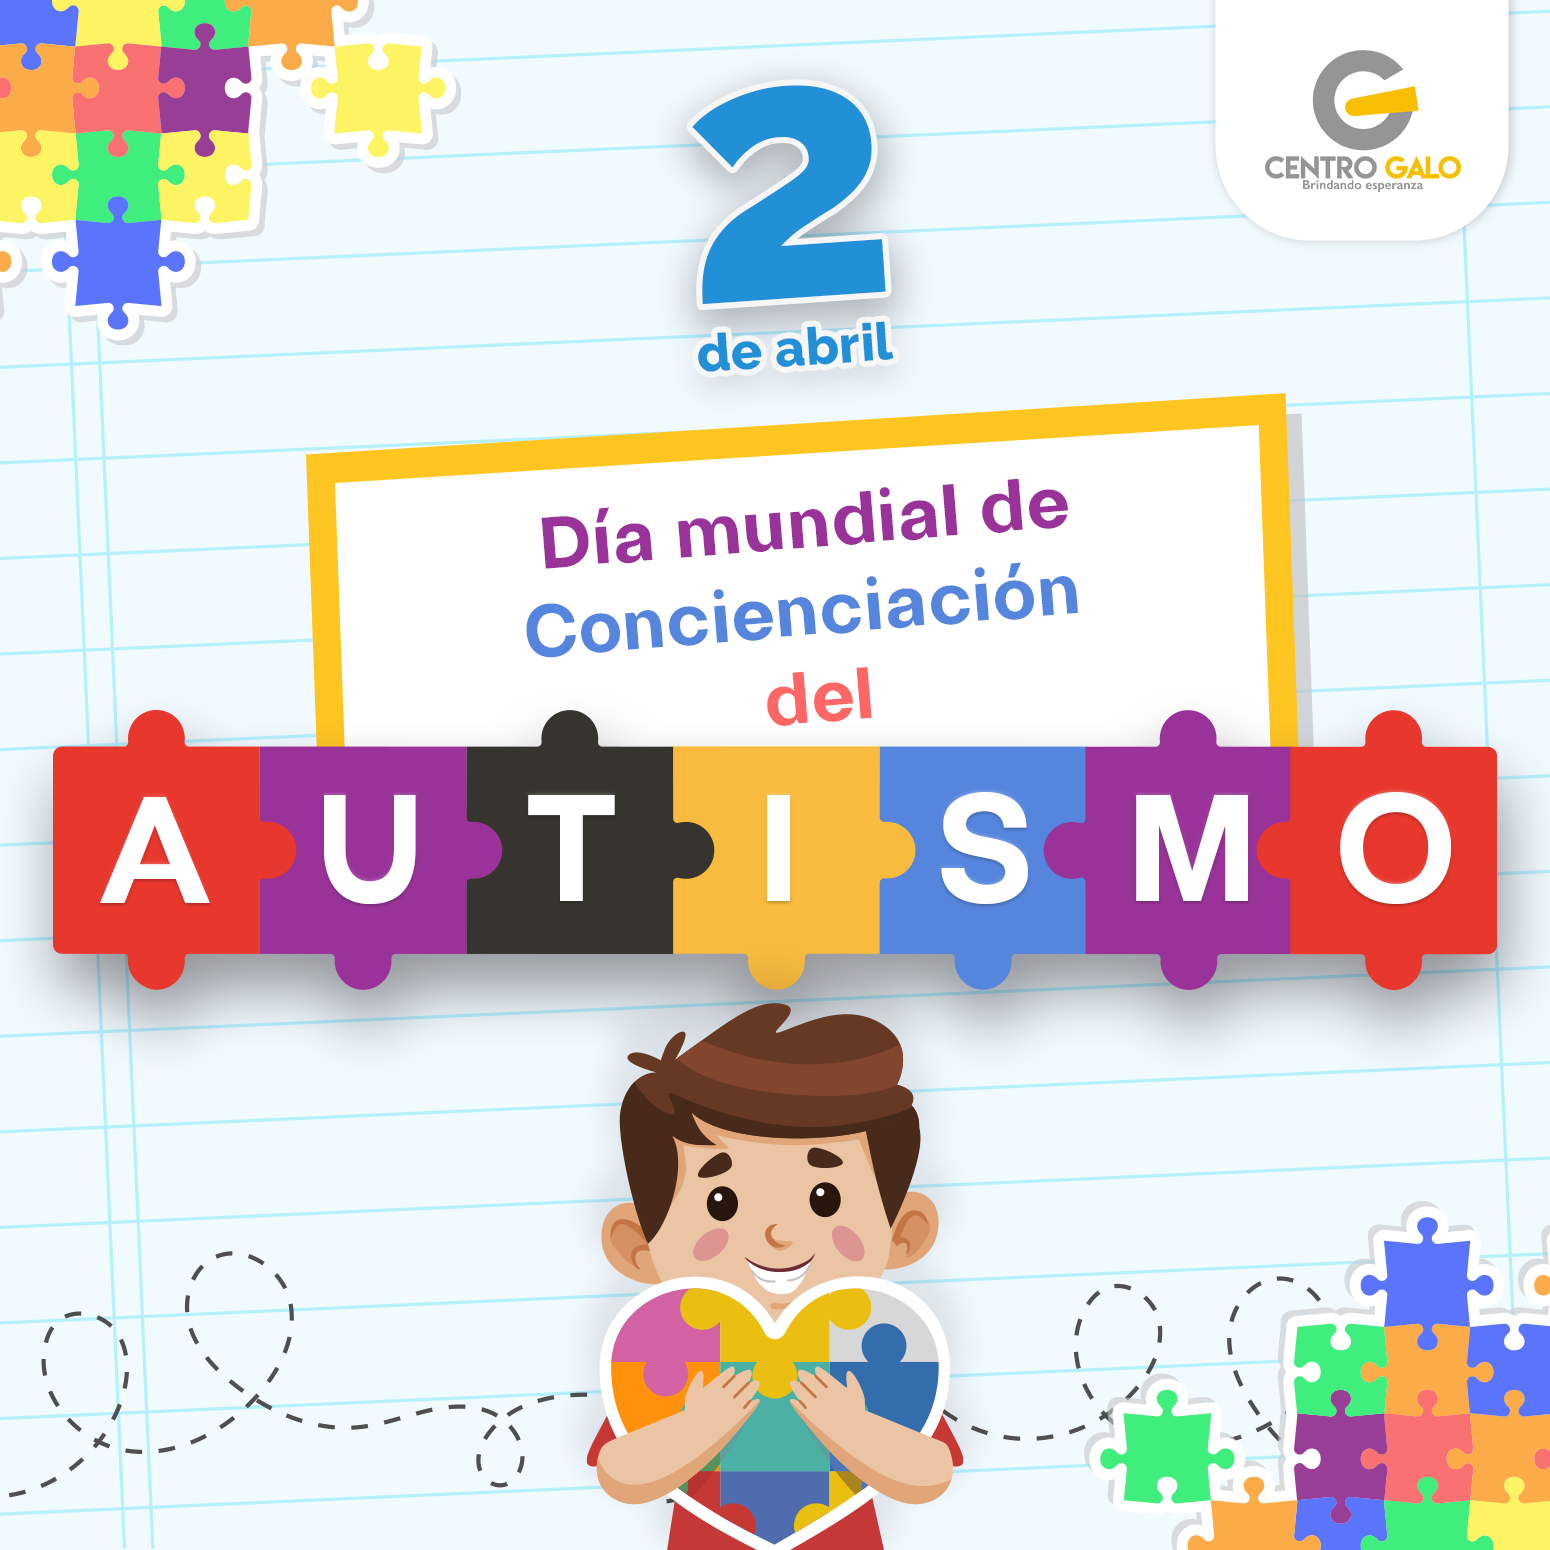 “Día Mundial de Concienciación del Autismo”